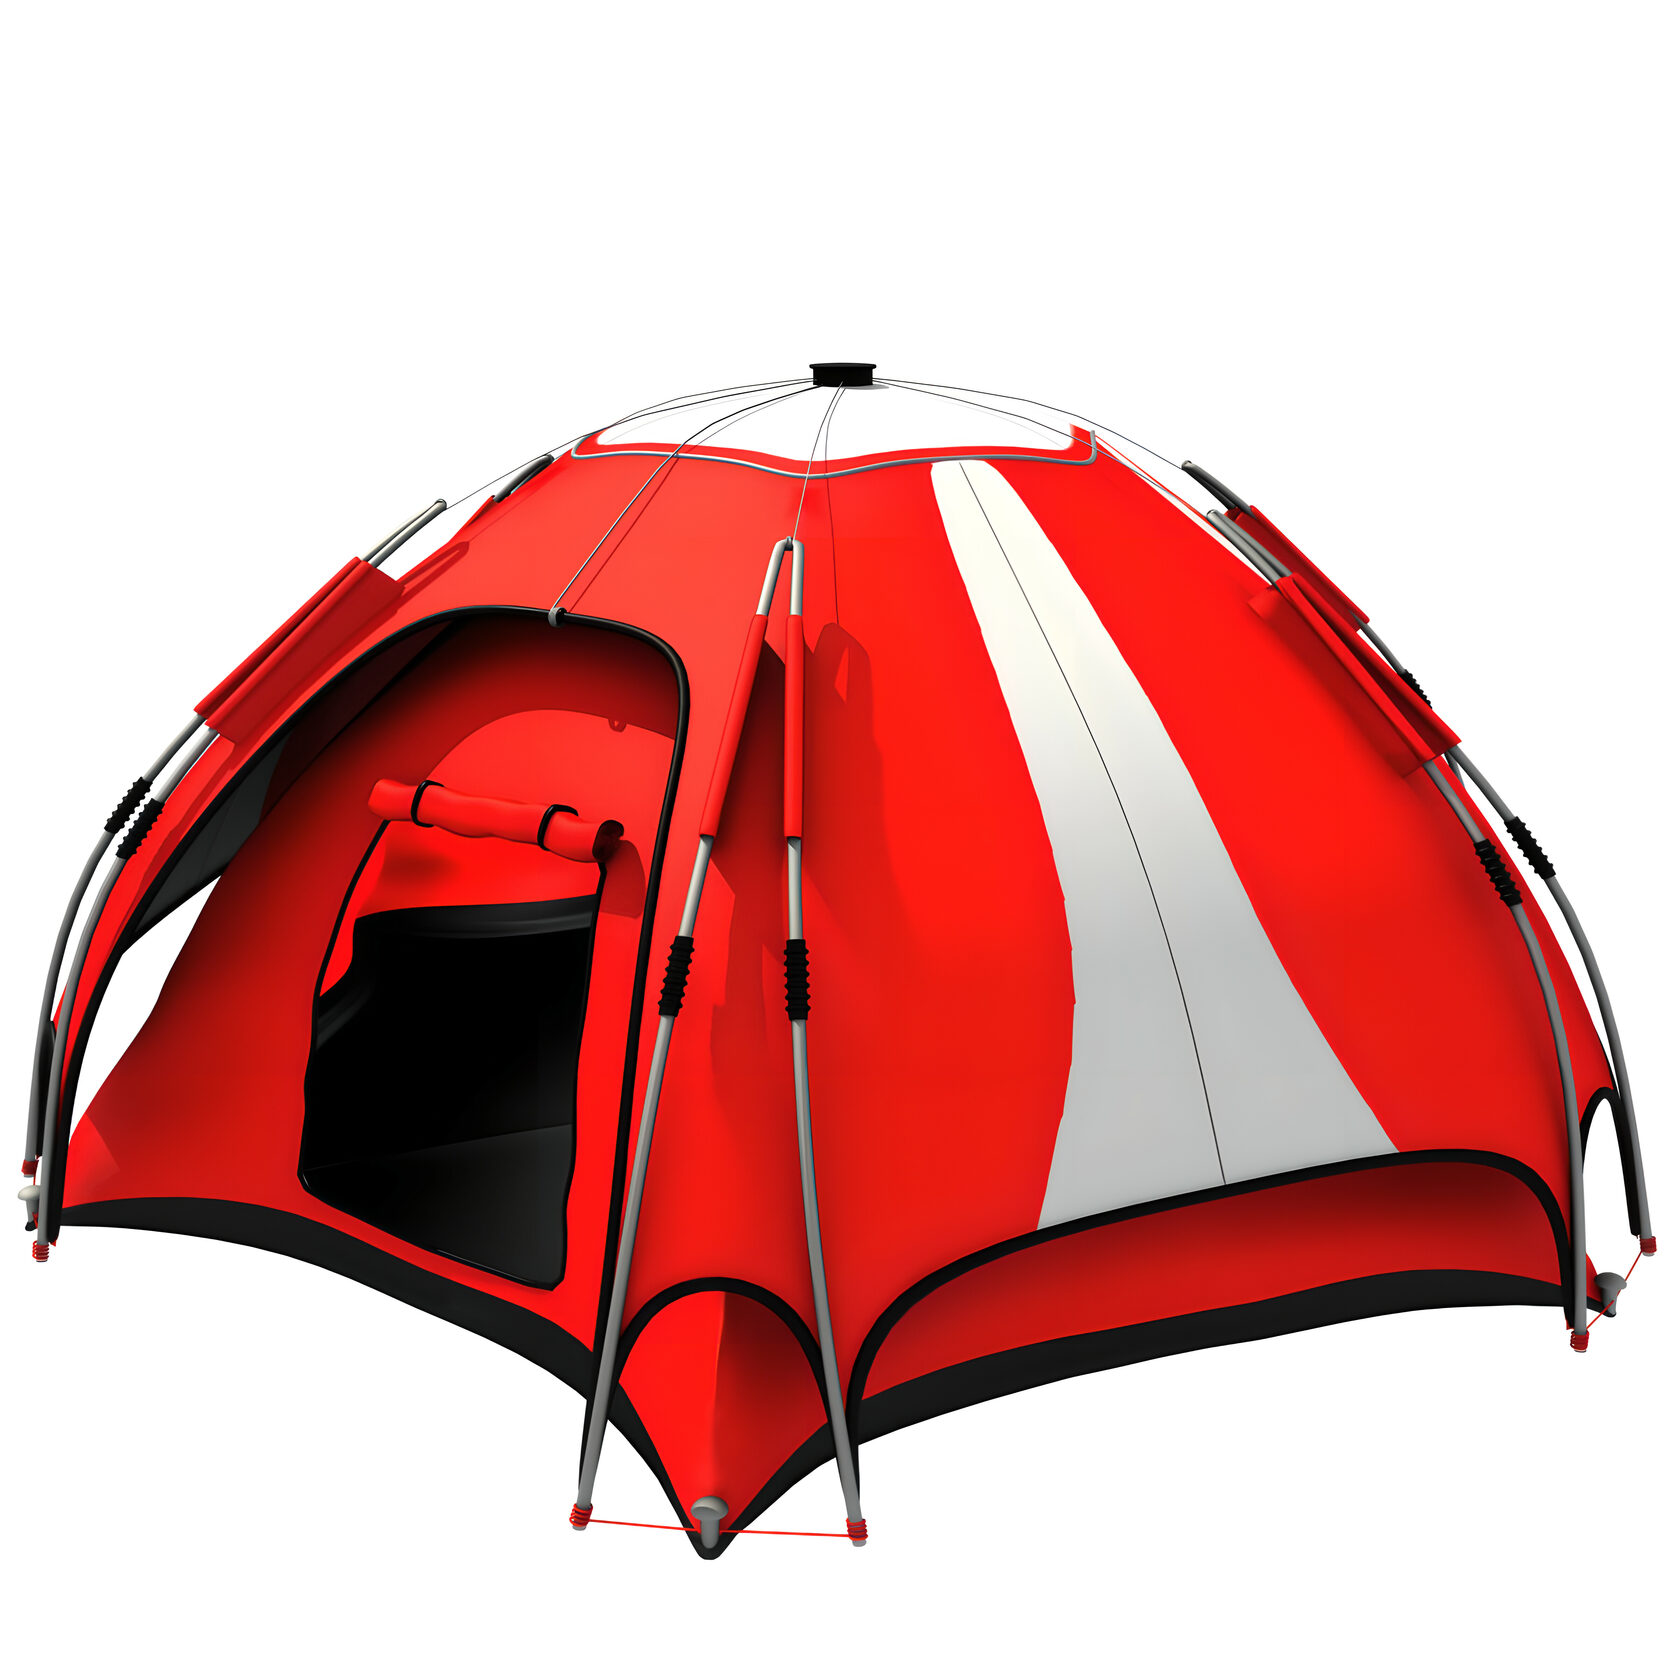 Camping platform. Туристическая палатка FRT 223-3. REMIXVL палатка шатер. Палатка Теслин 2. Палатка jtlt020tn.